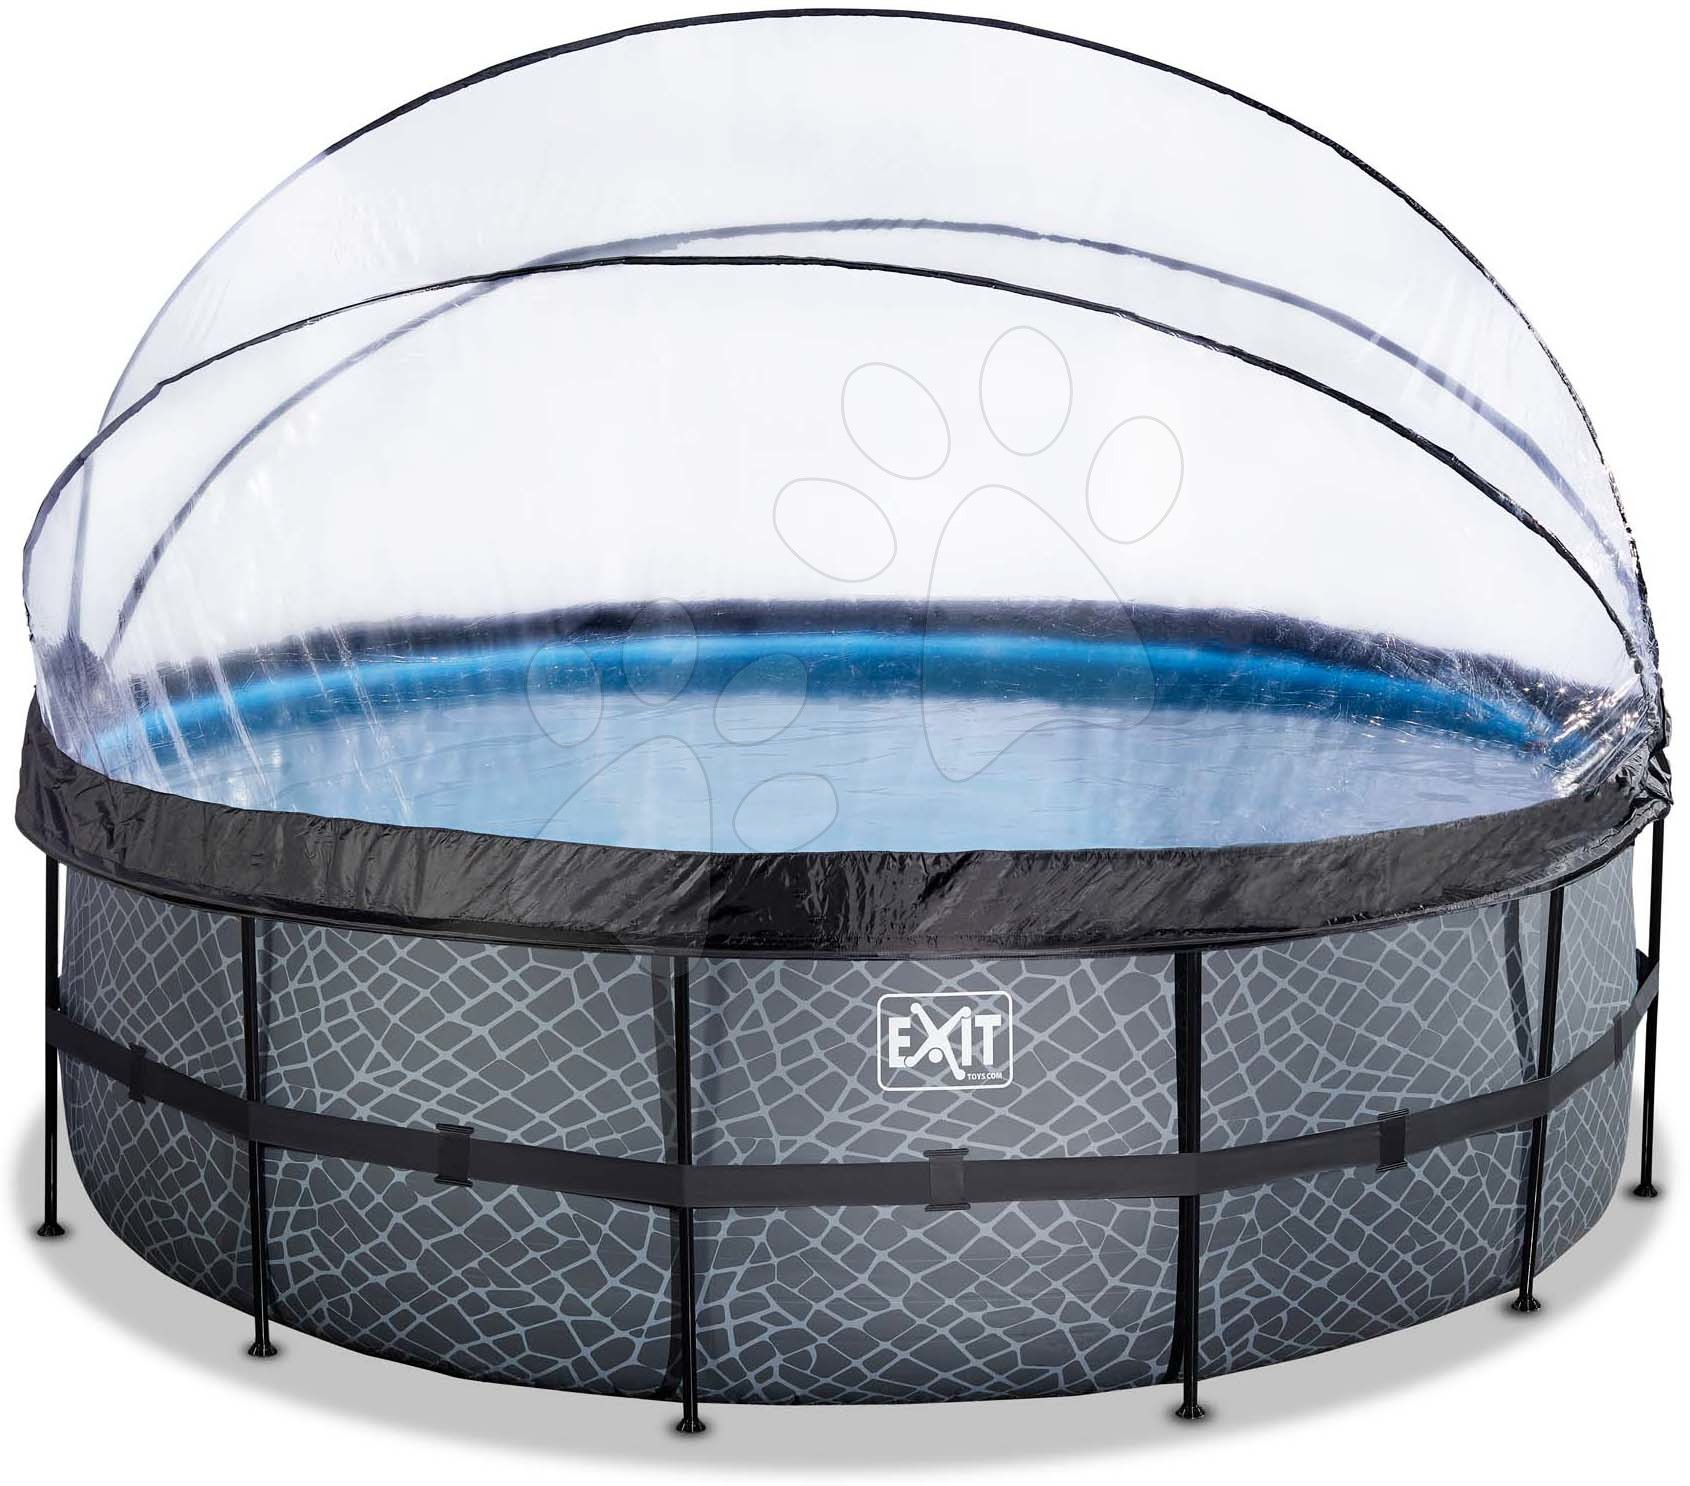 Bazén s krytem a pískovou filtrací Stone pool Exit Toys kruhový ocelová konstrukce 450*122 cm šedý od 6 let